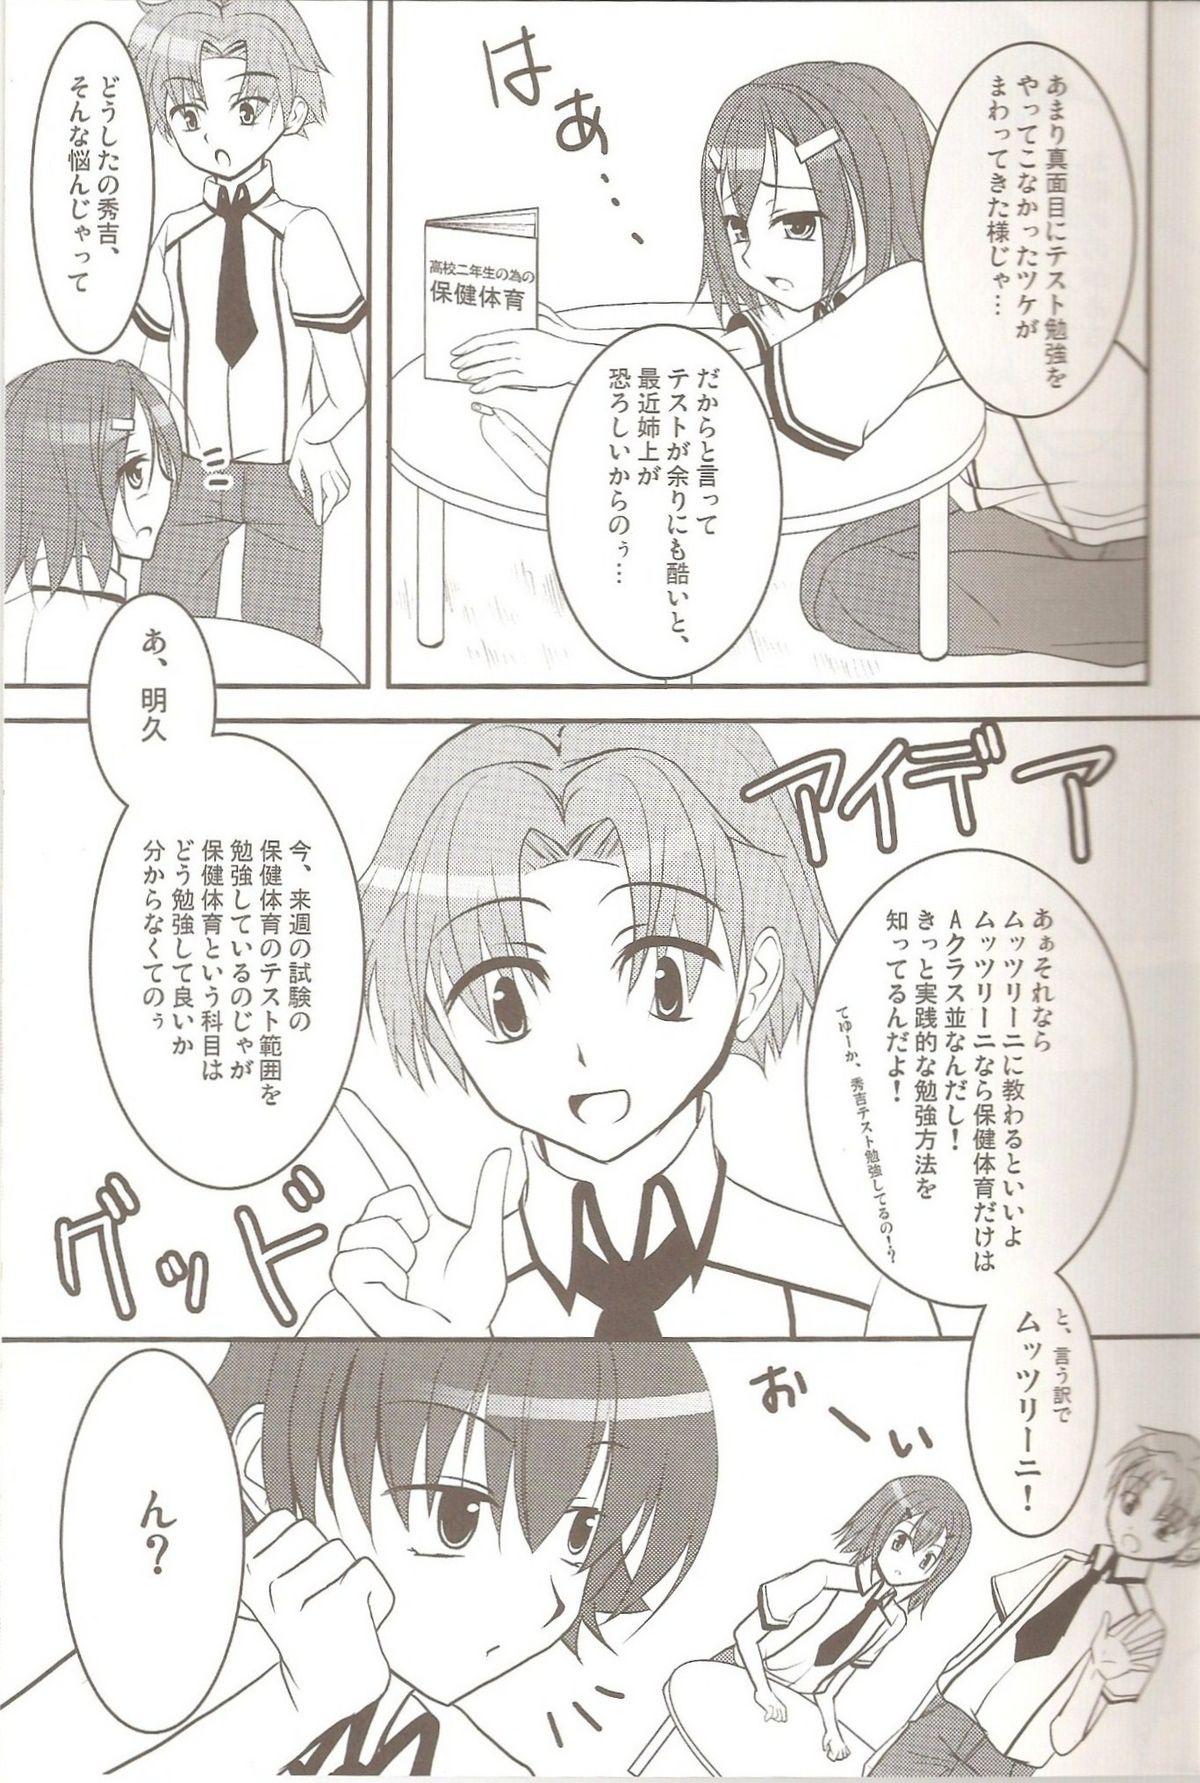 Pissing Hideyoshi no Hokentaiiku - Baka to test to shoukanjuu Yanks Featured - Page 4